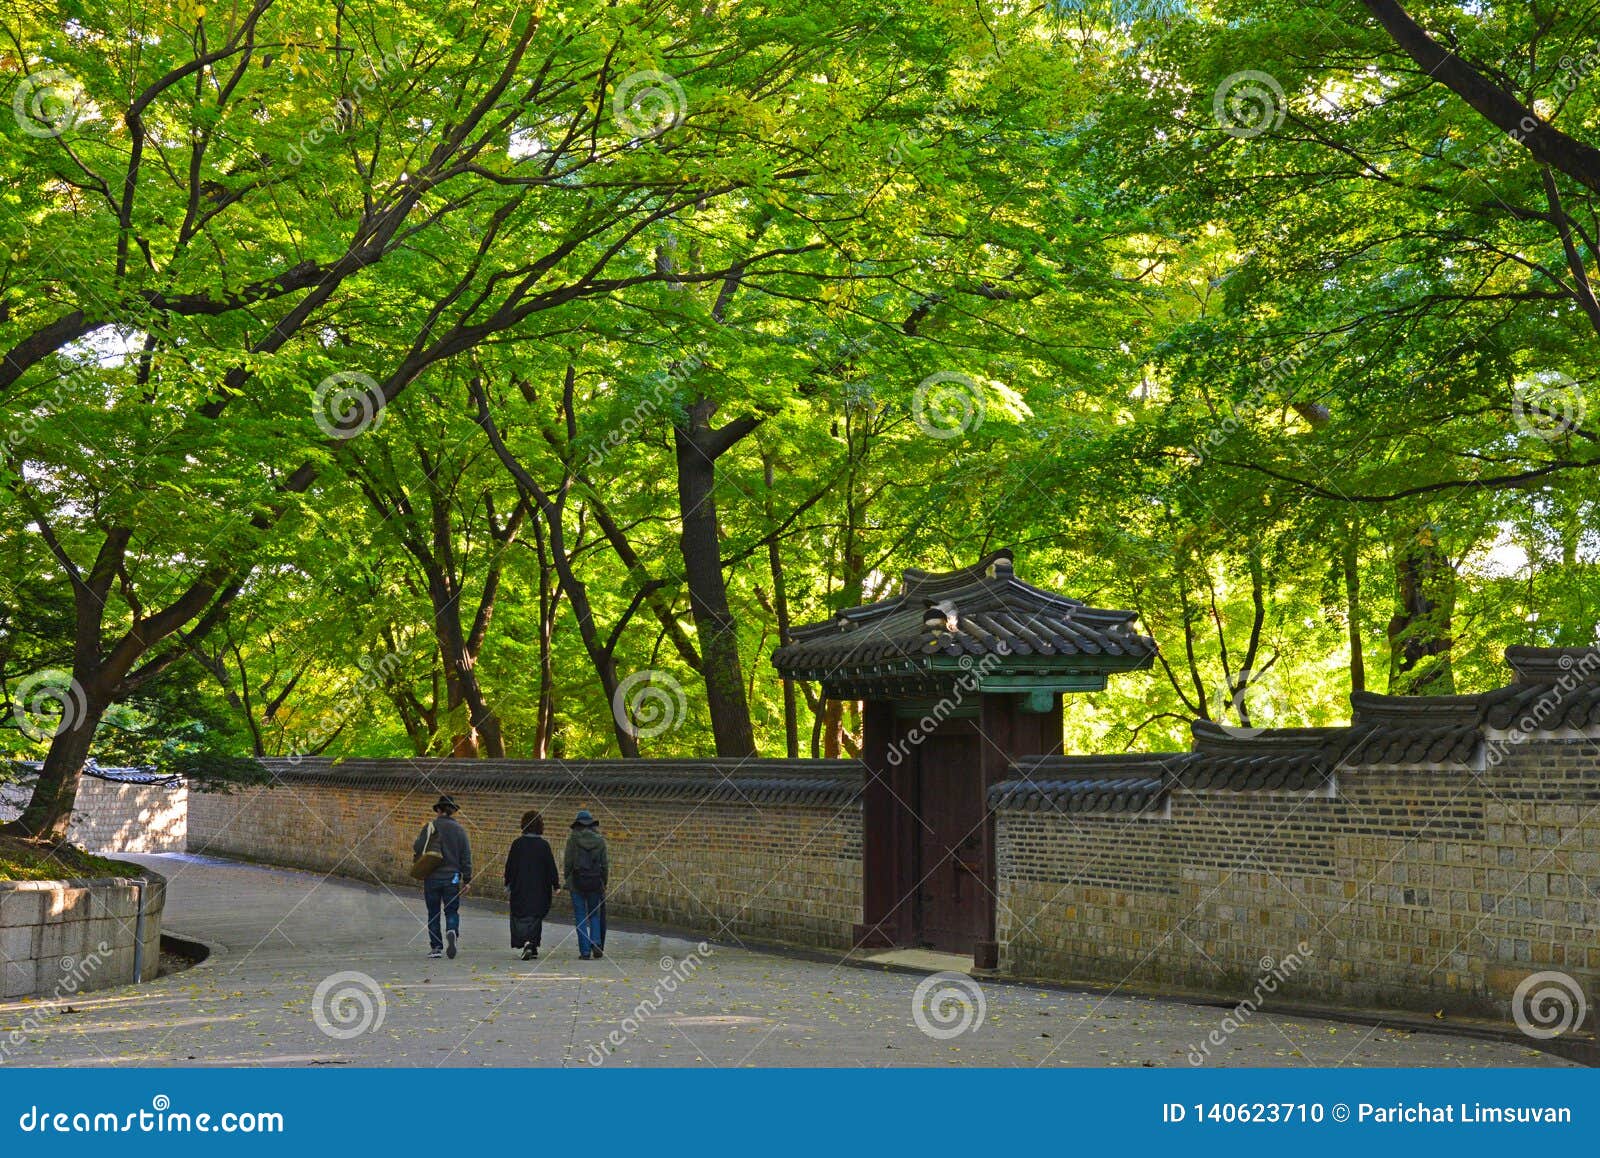 Tourist Walking Along Stone Wall Of Secret Garden Of Changdeokgung